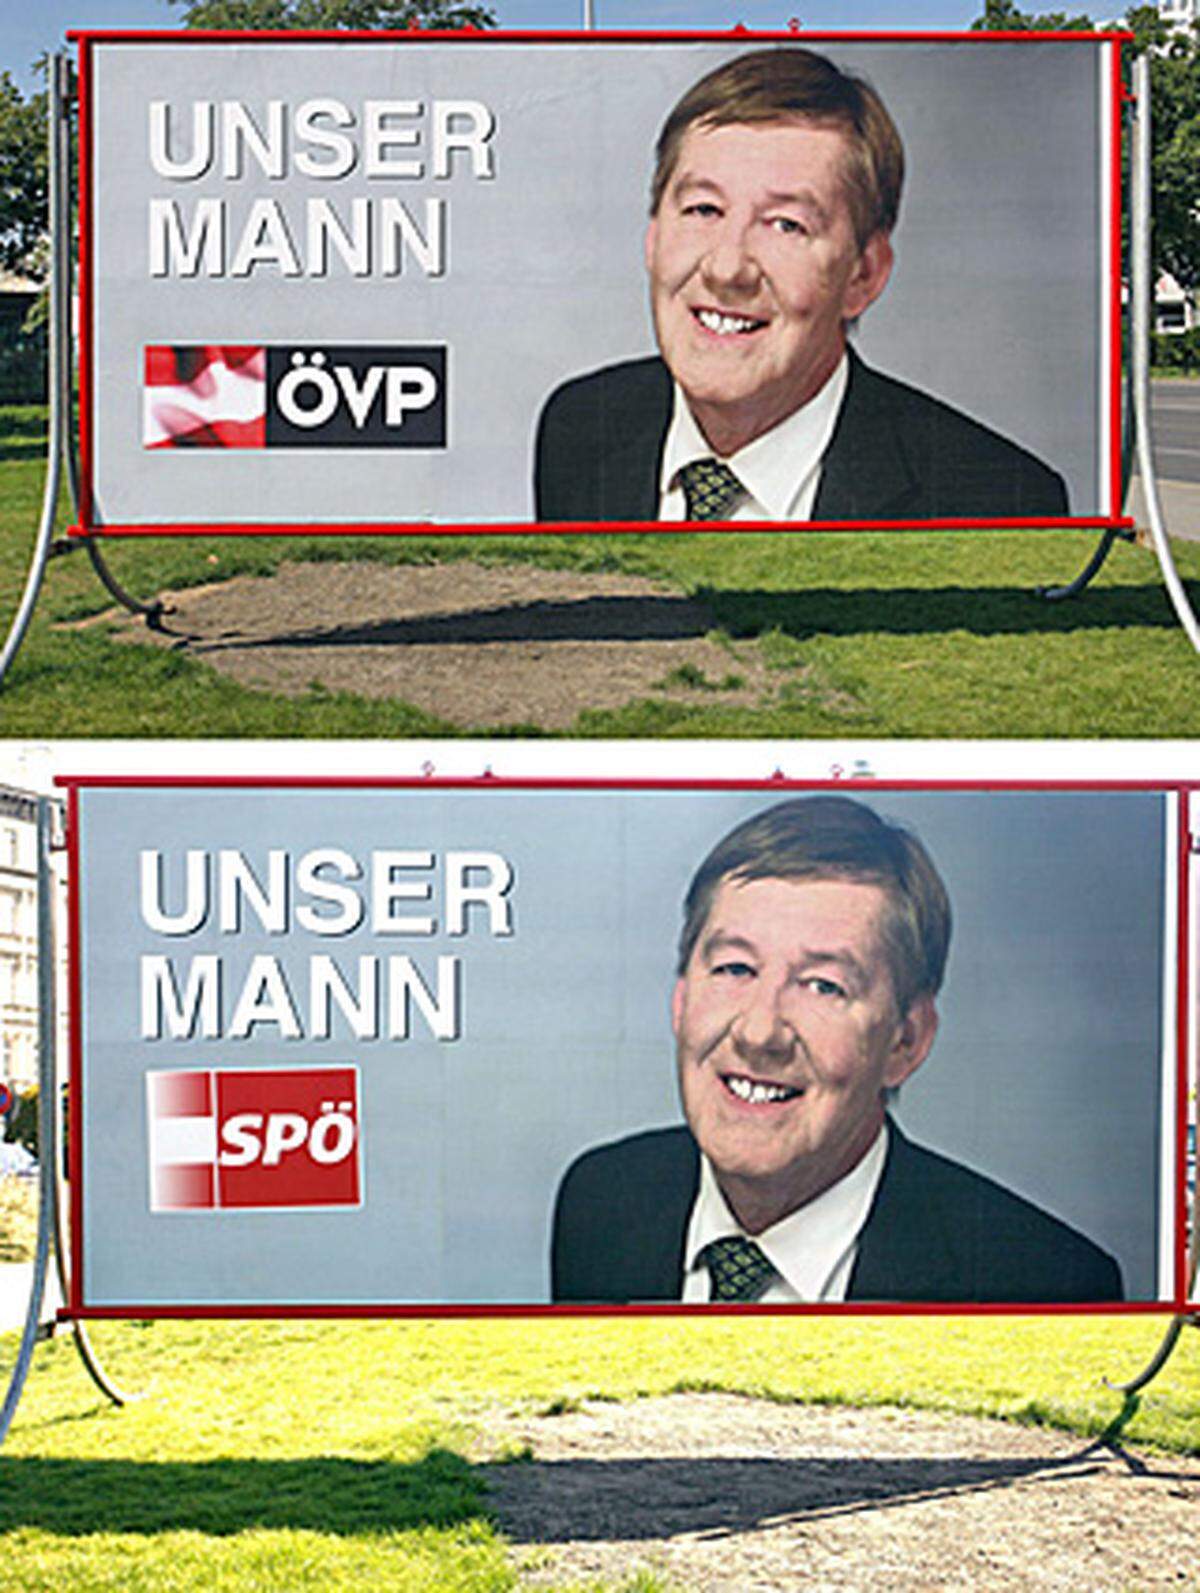 Der Vorarlberger Kuenstler Gottfried Bechtold ließ sich fuer falsche Wahlplakate ablichten. Im Bild Vorder- und Rueckseite des selben Plakatstaenders. Er will damit das Ende der Ideologien aufzeigen.